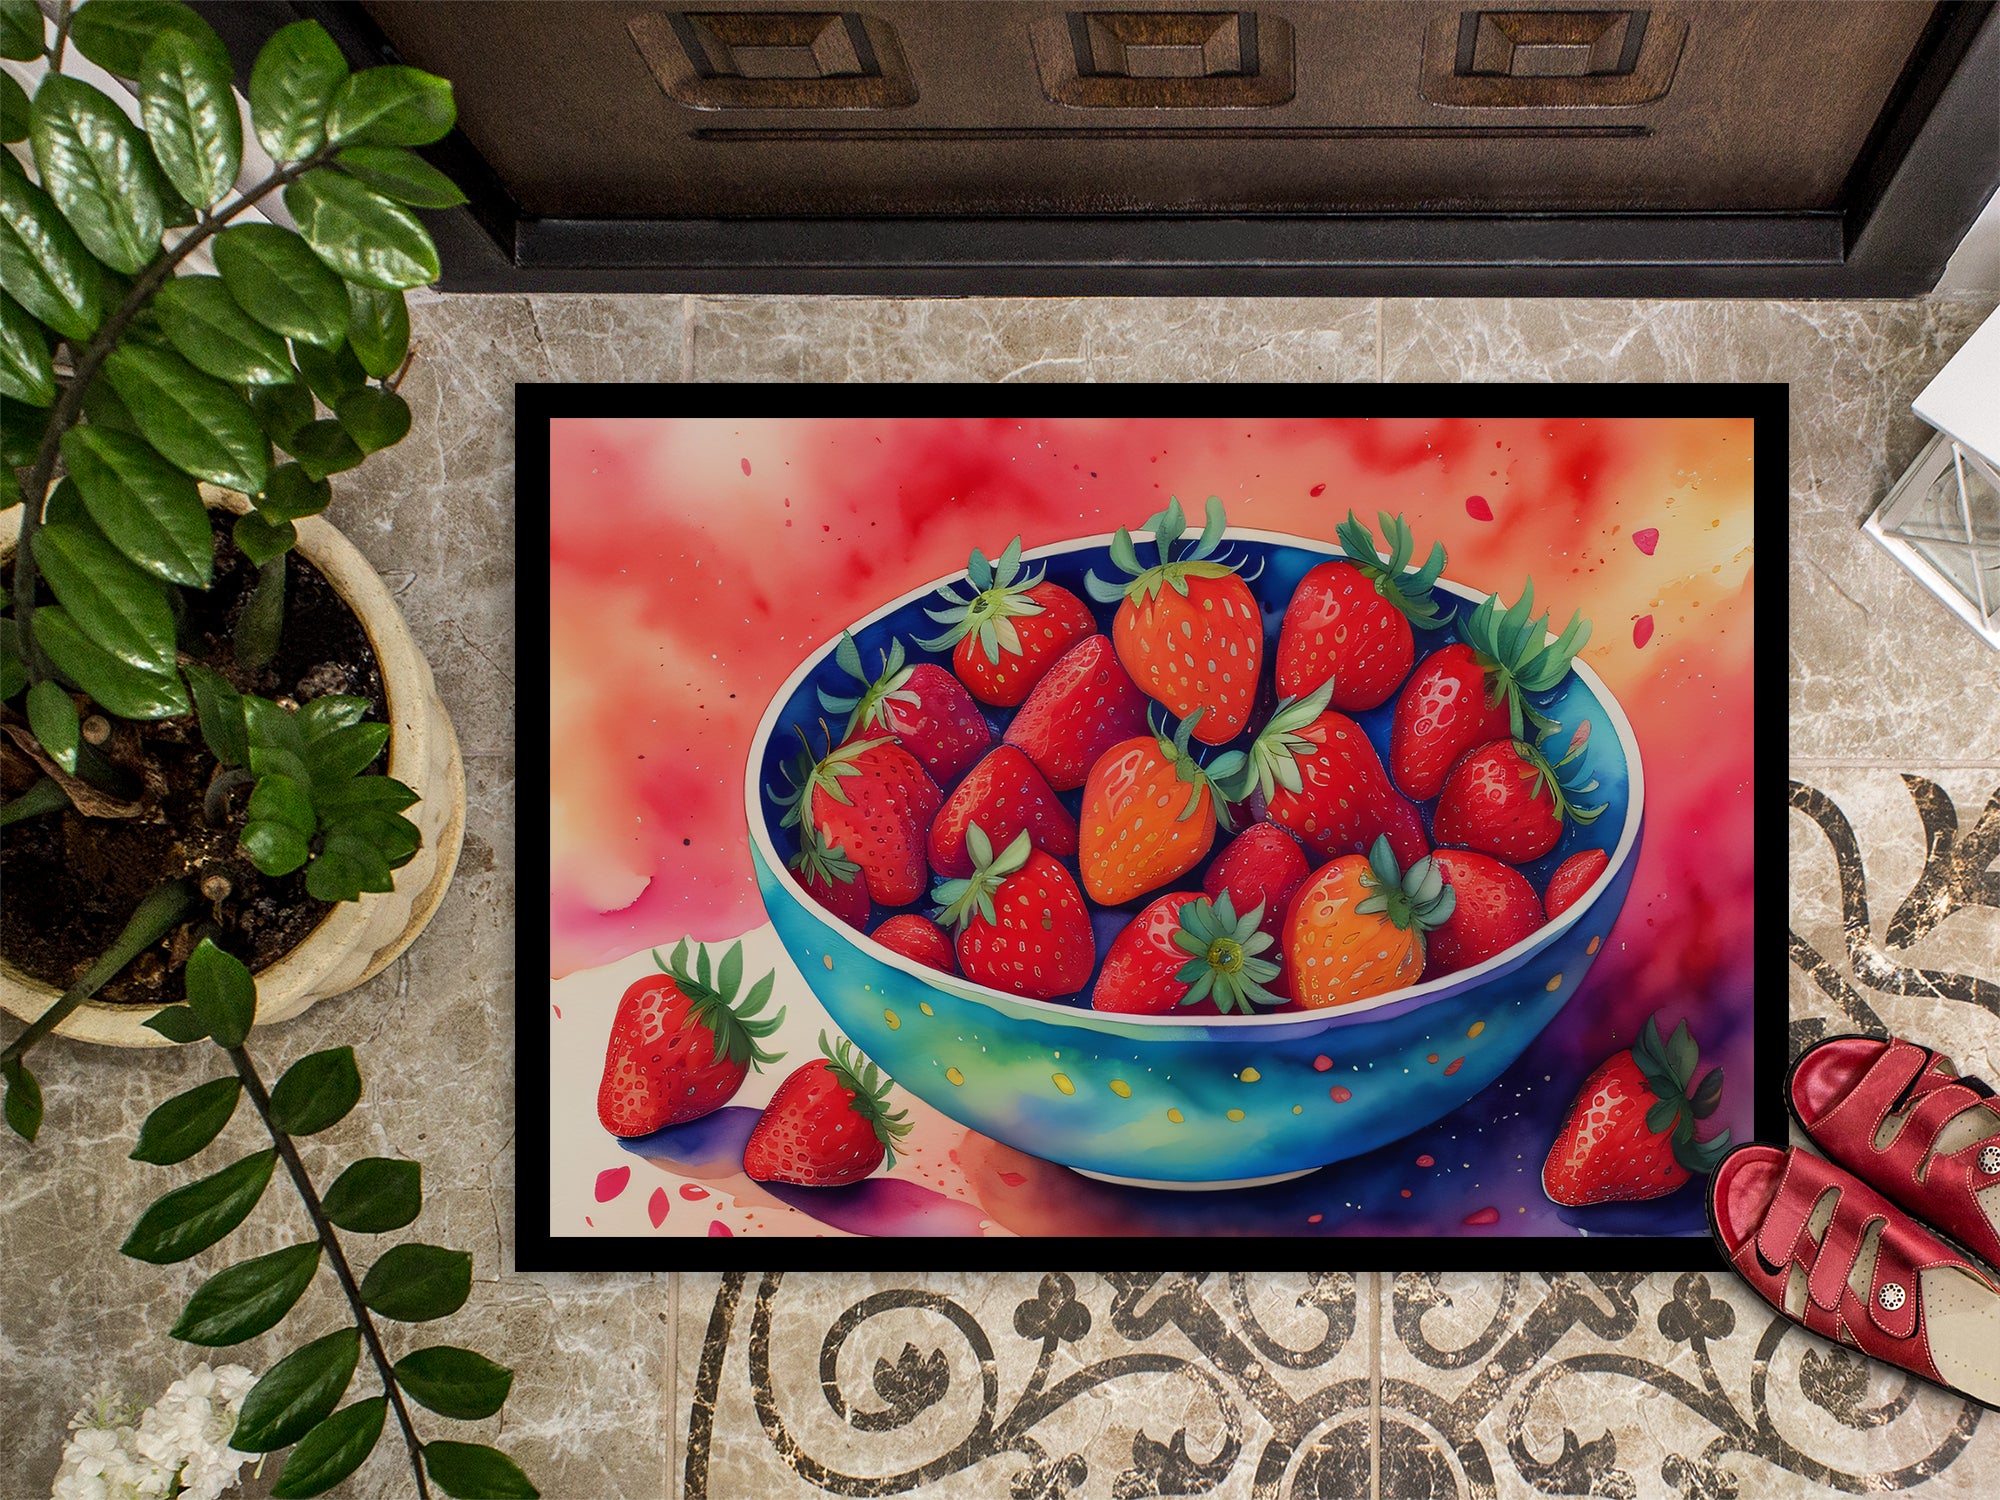 Colorful Strawberries Doormat 18x27